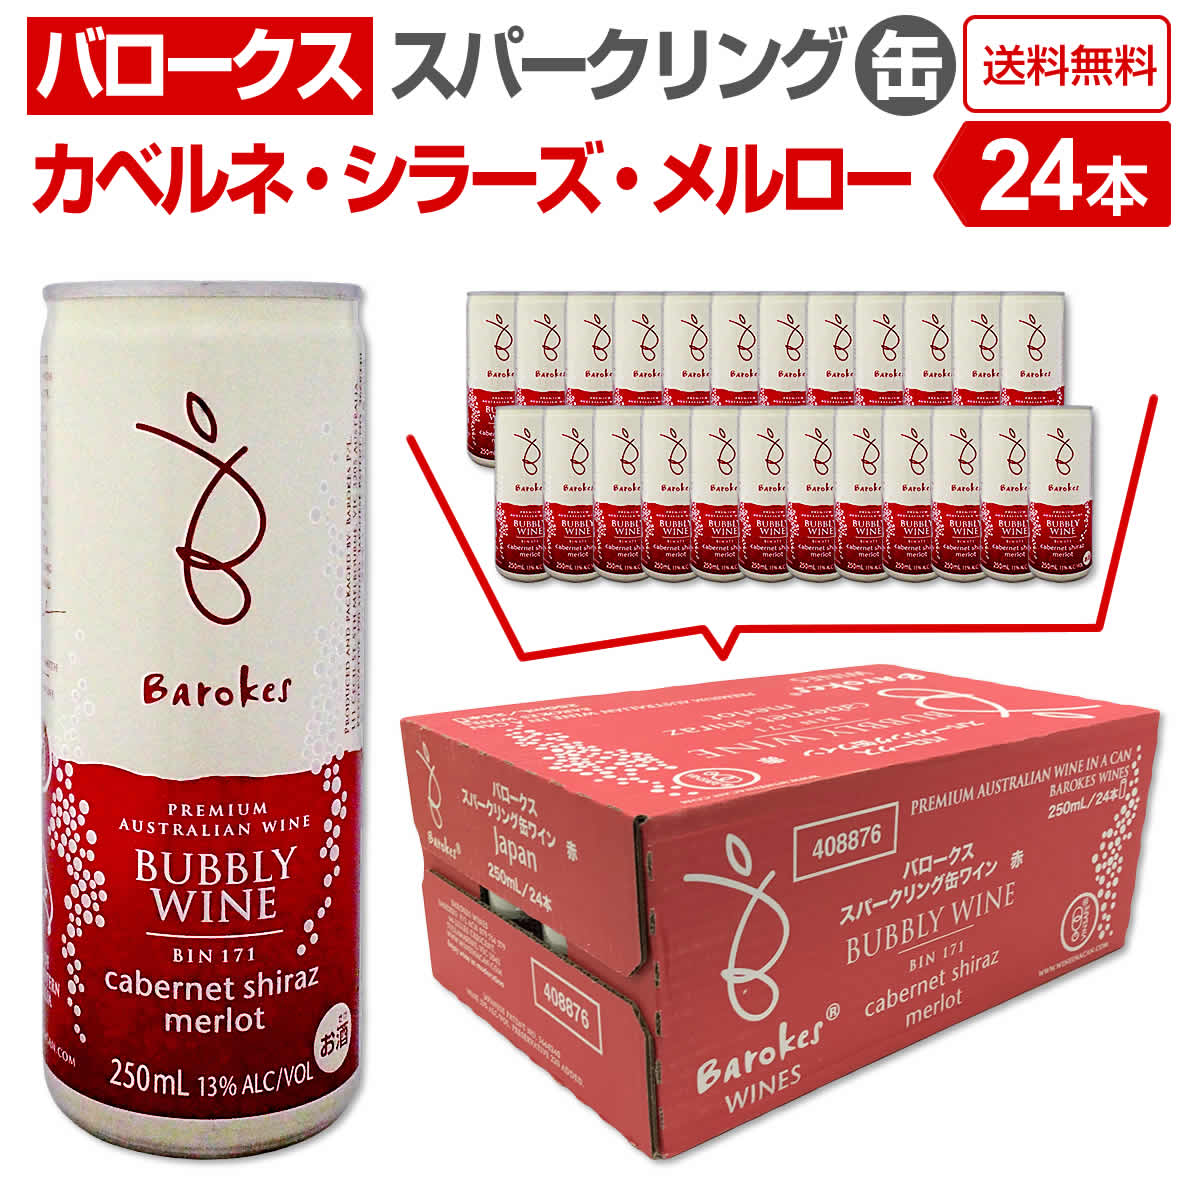 スパークリングワイン バロークス 缶 タイプ 赤ワイン 250ml 6本